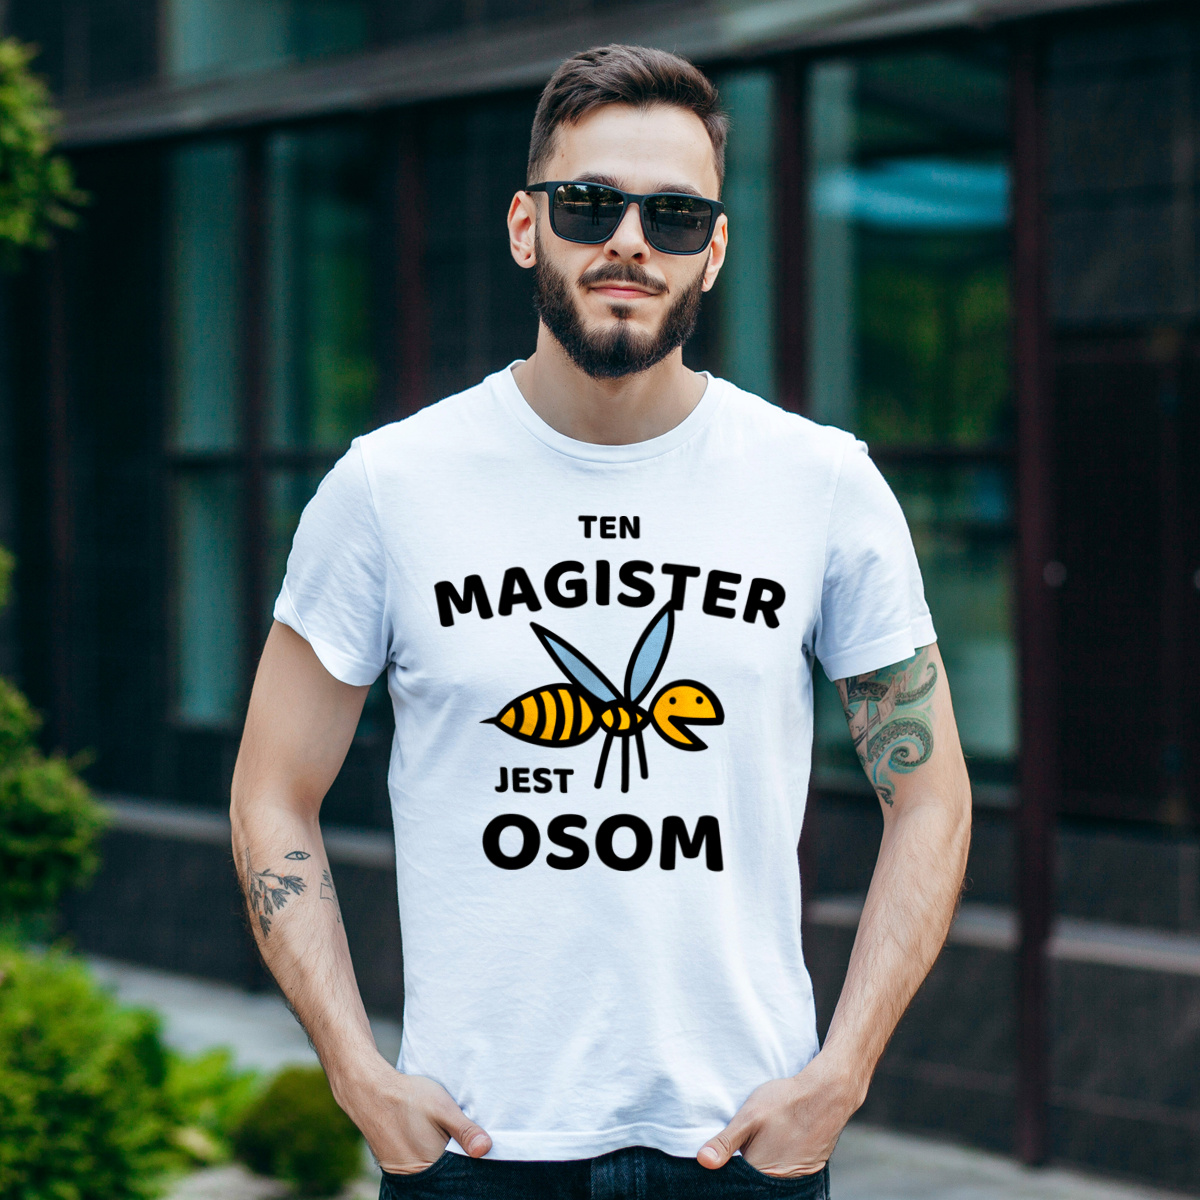 Ten Magister Jest Osom Awesome - Męska Koszulka Biała